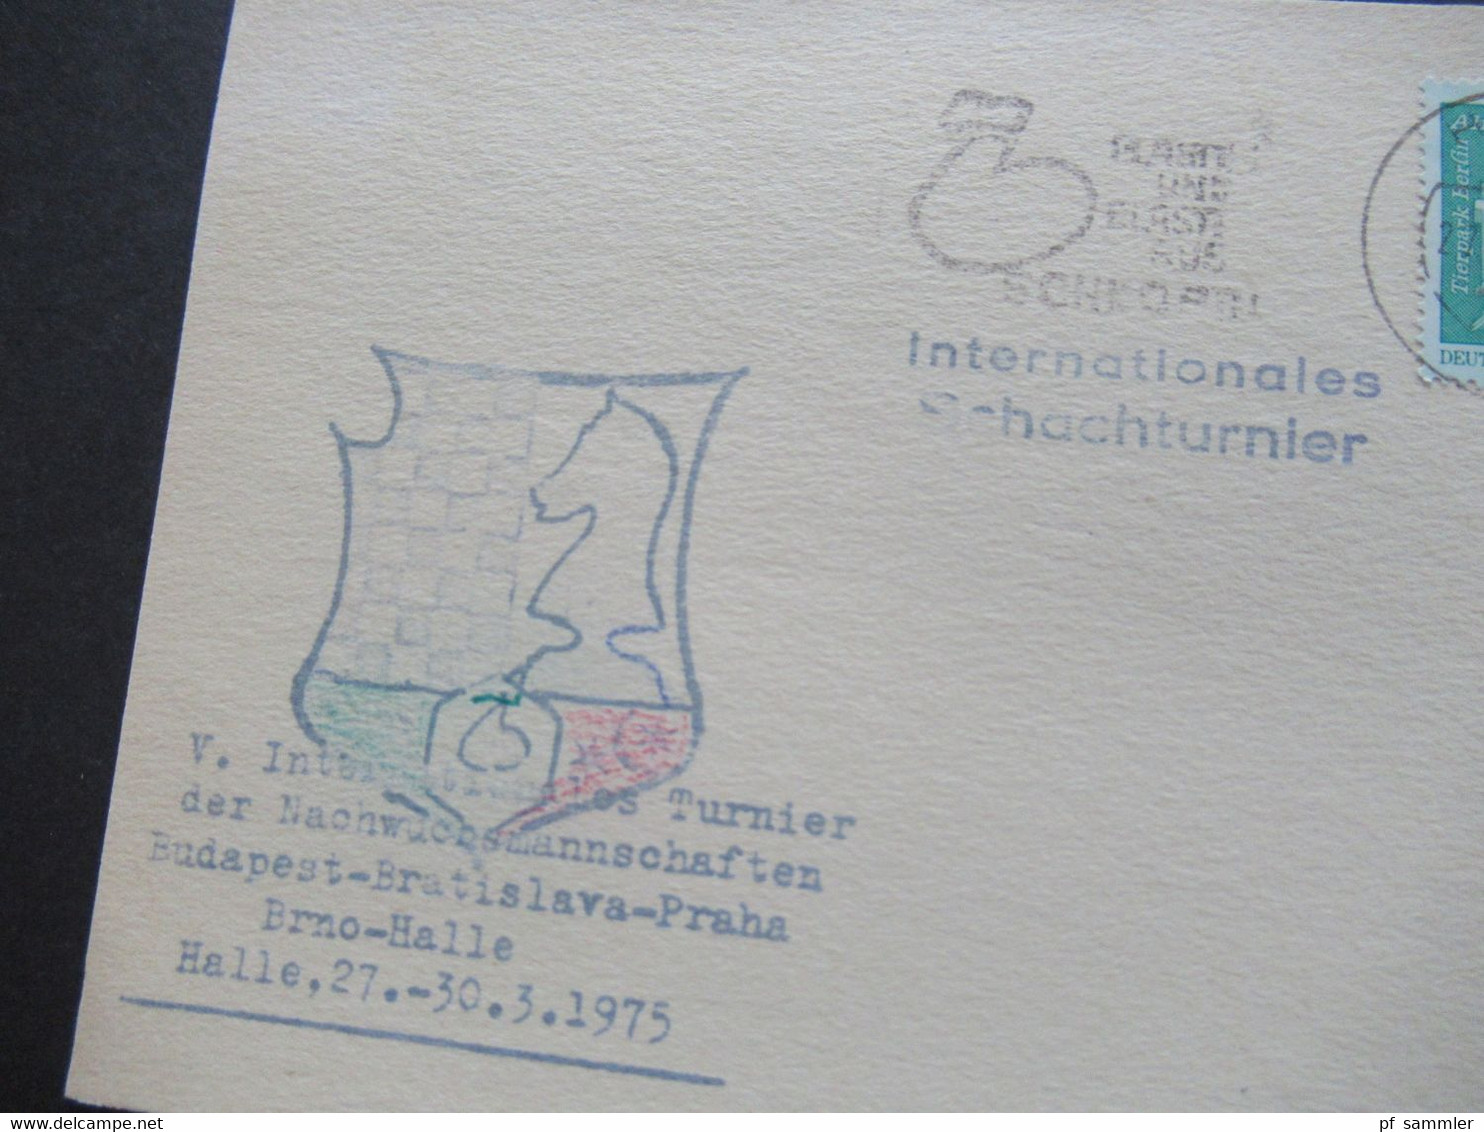 DDR 1975 Sonderkarte Internationales Schachturnier Nachwuchsmannschafteb Budapest - Bratislava - Praha - Brno - Halle - Schach